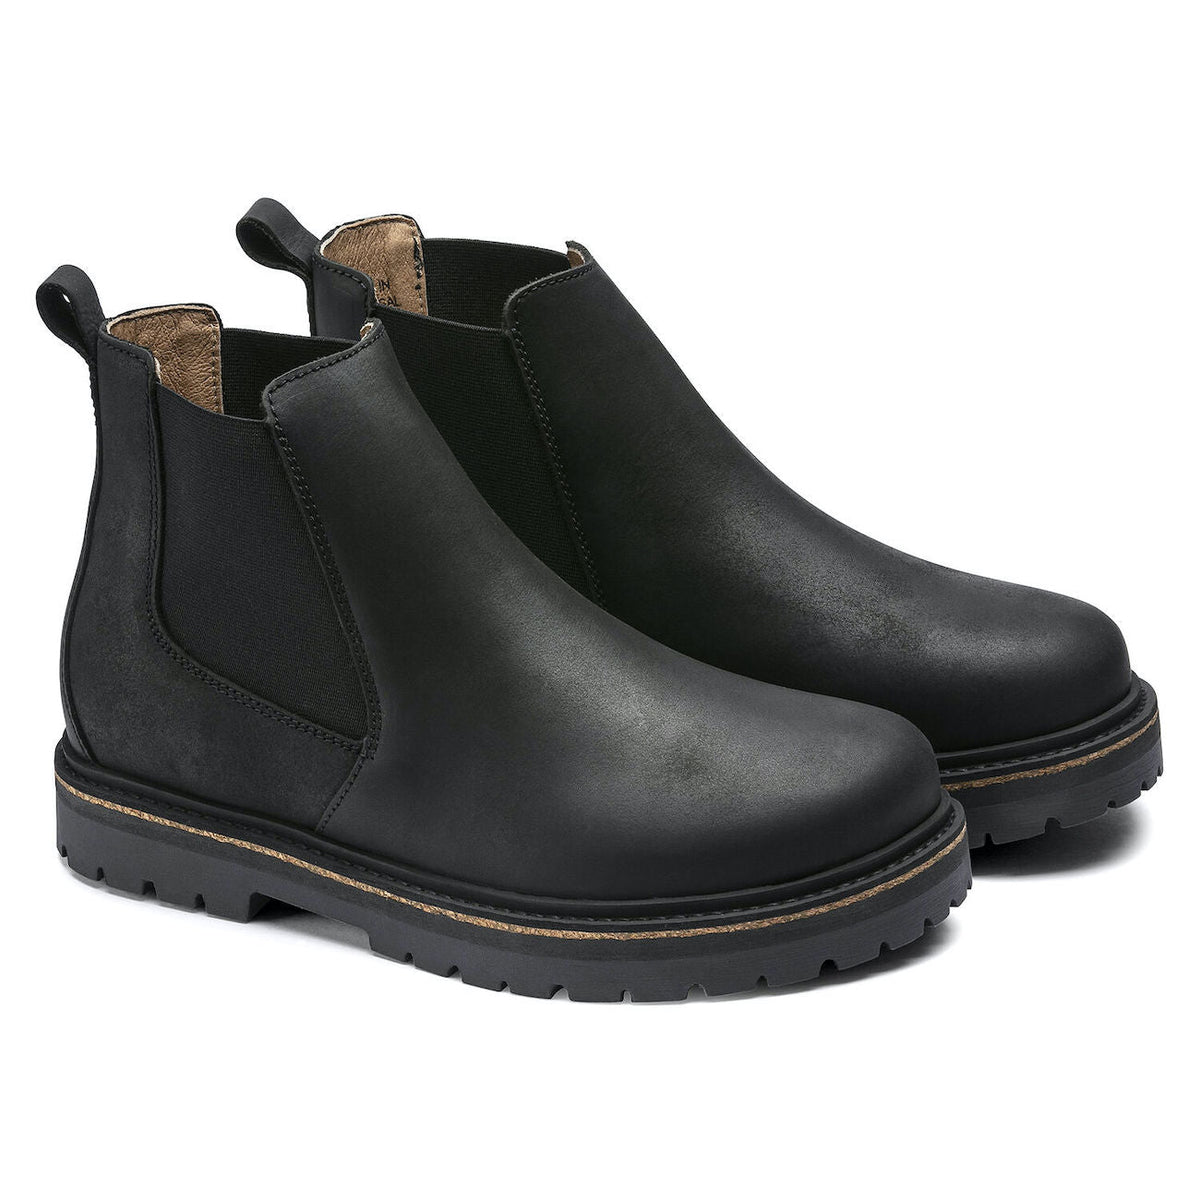 Birkenstock Seasonal, Stalon, Waxy Nubuck Leather, Regular Fit, Black Boots Birkenstock Seasonal 